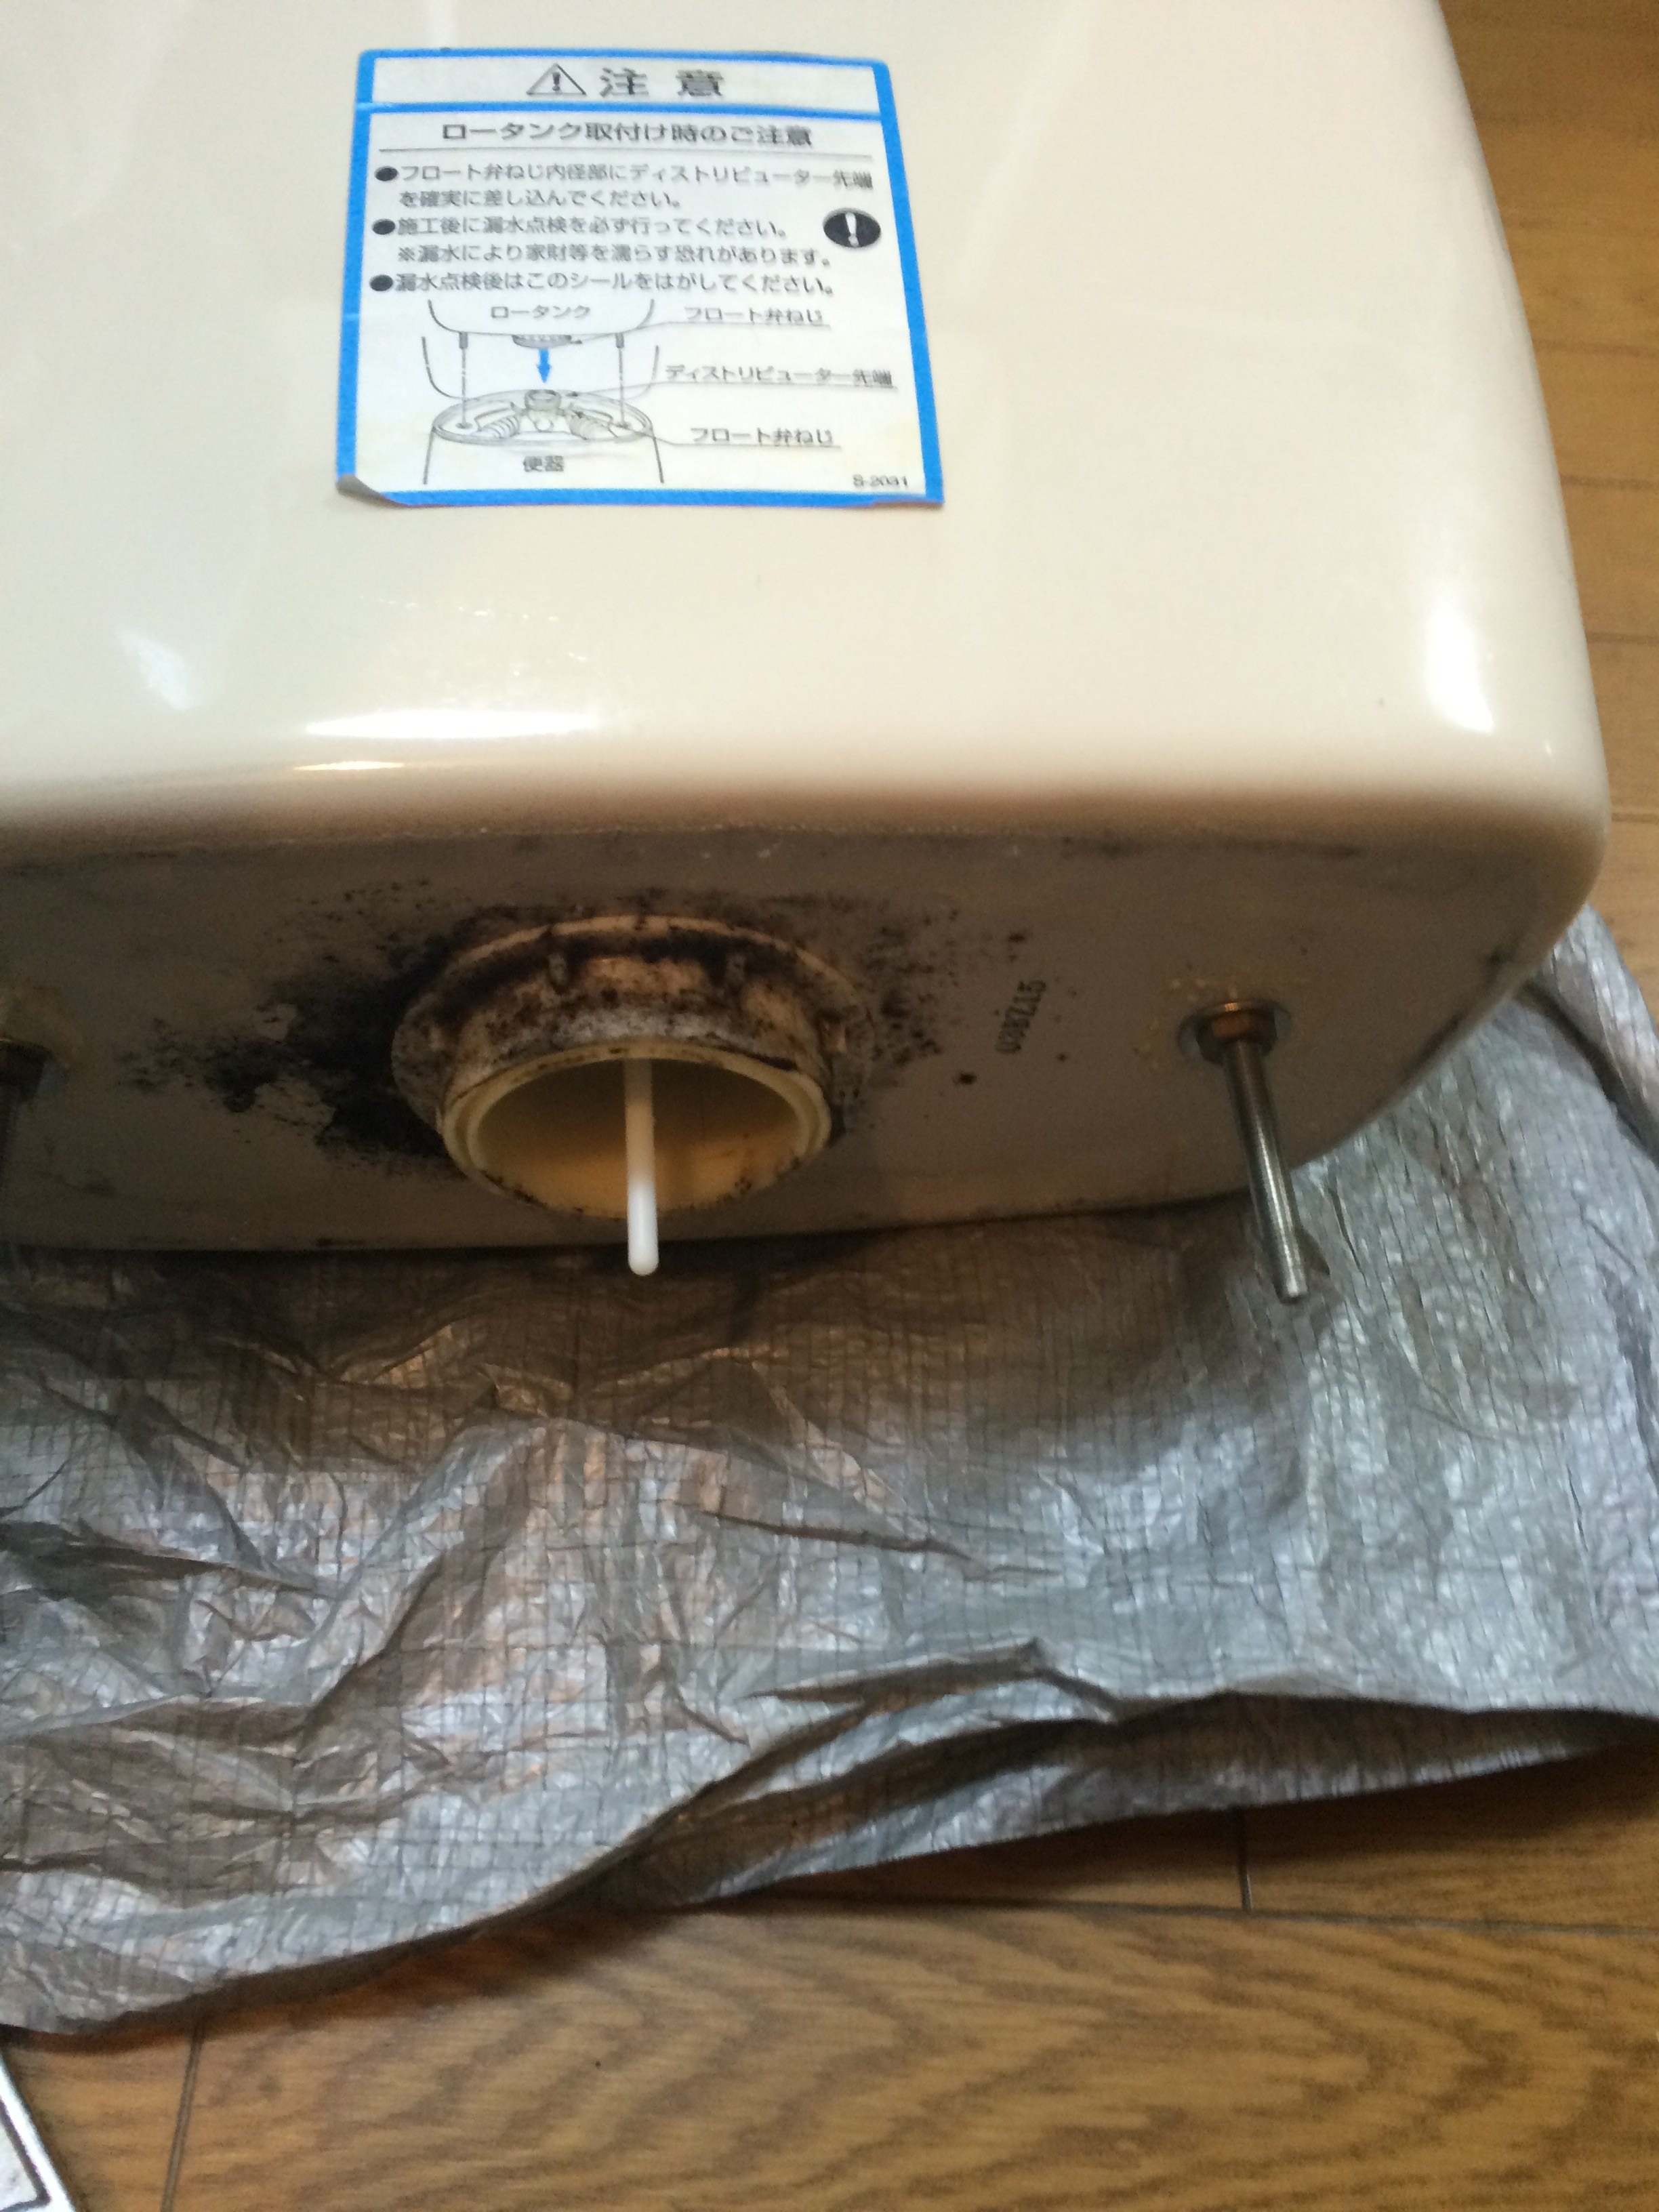 オーバーフロー管の折れ 洗面台やトイレ 給湯器 エアコンなどの交換なら便利屋handyman